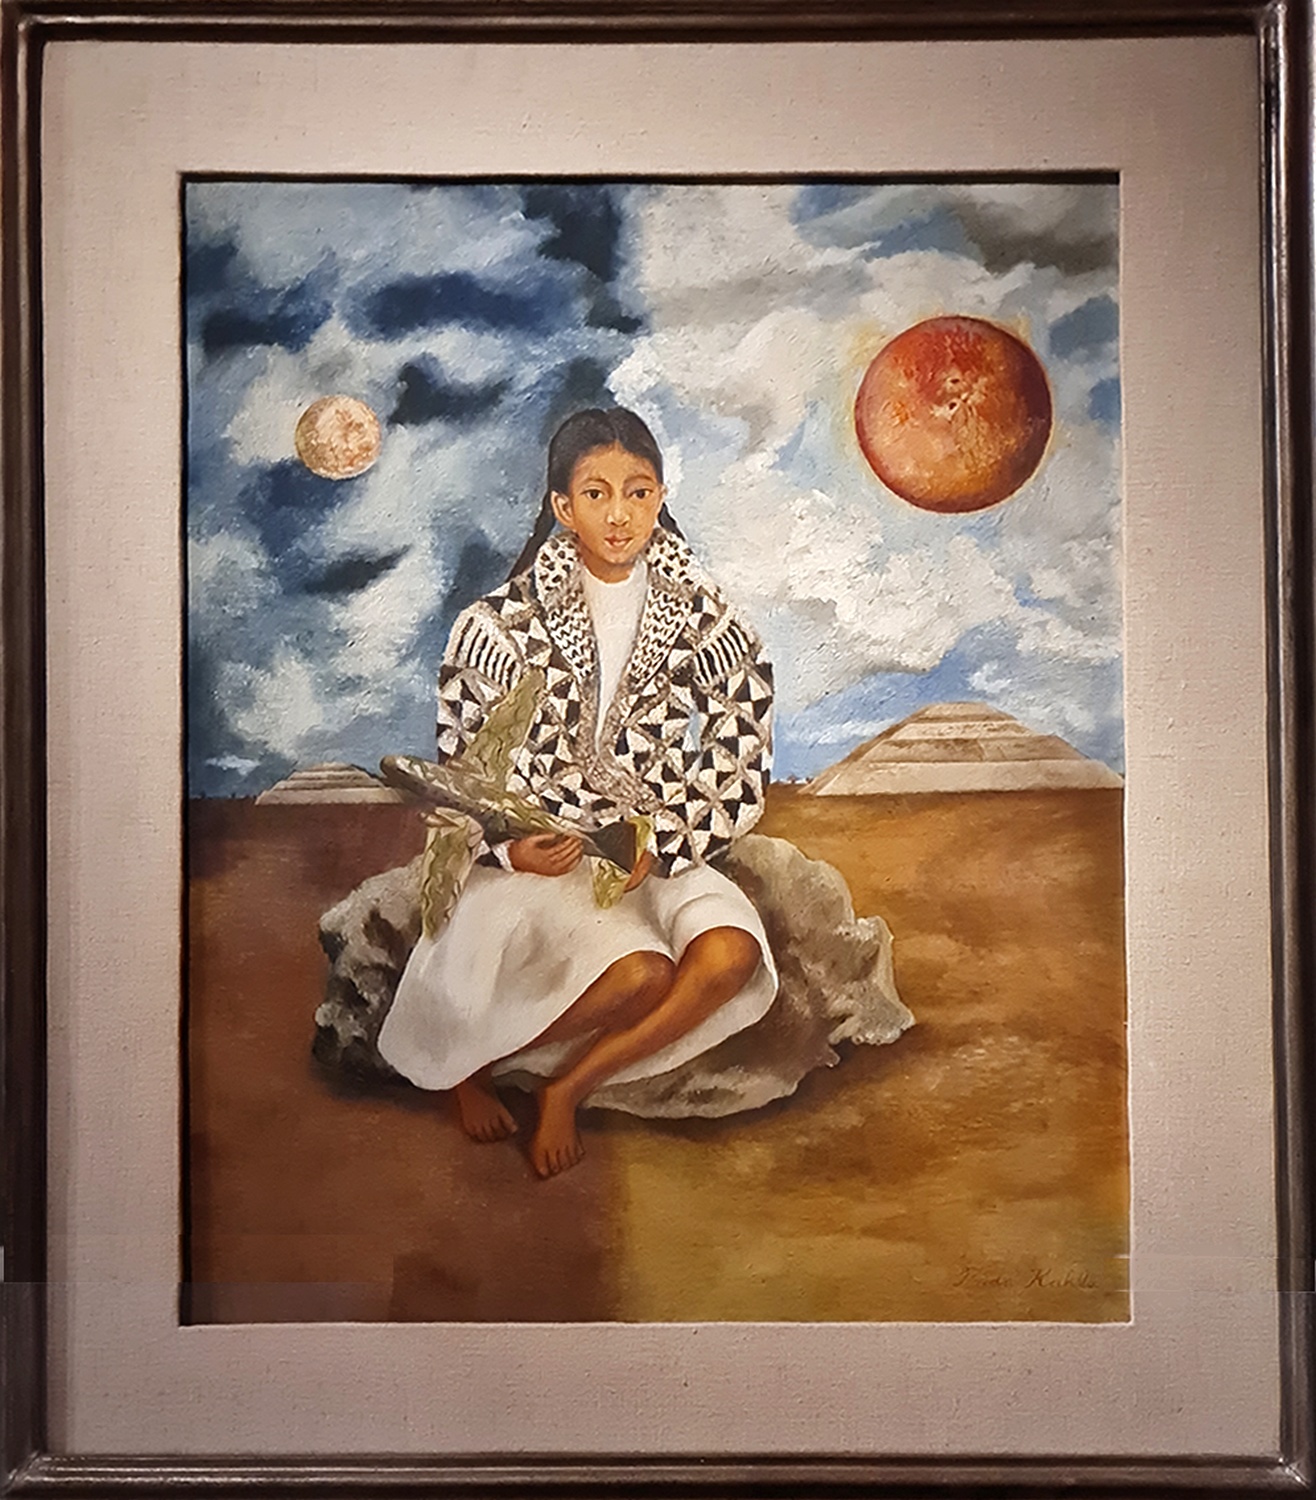 Frida Kahlo artiste